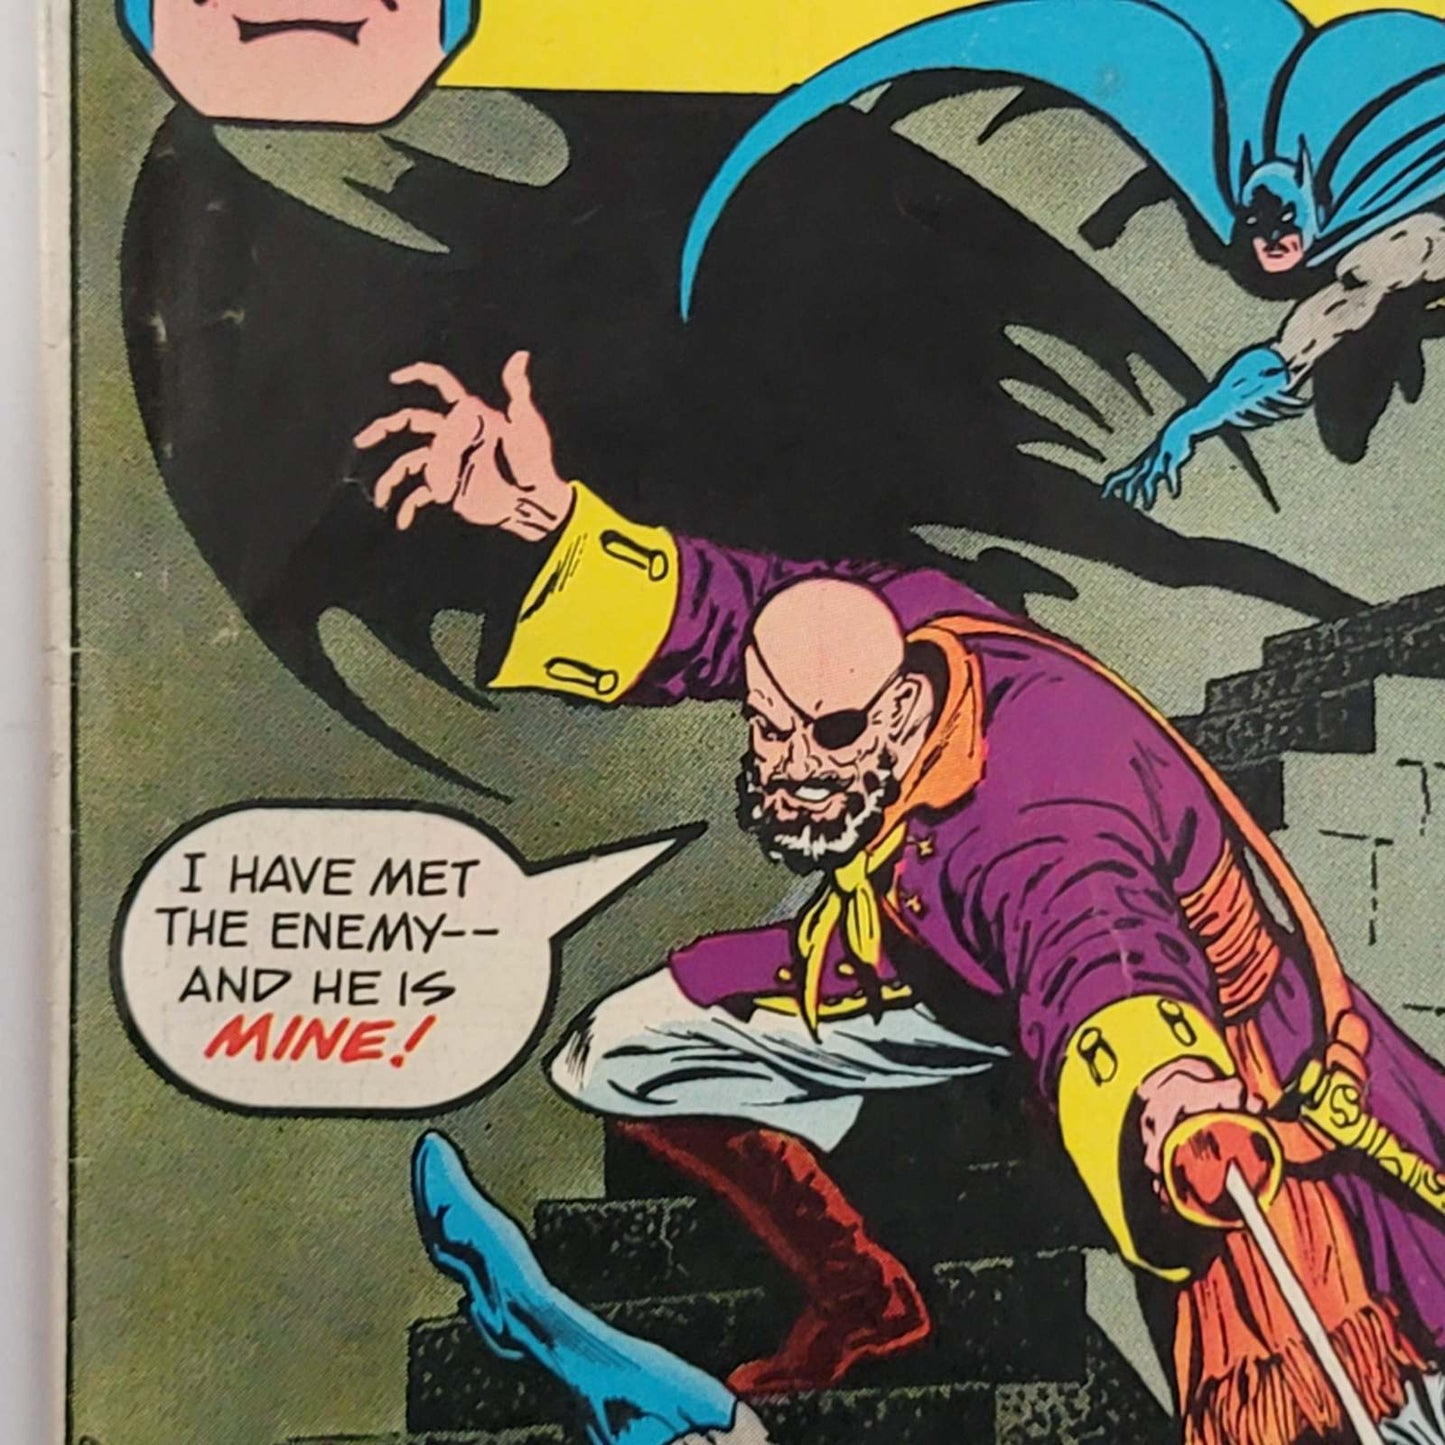 Detective Comics Vol 1 #0460 Item 3